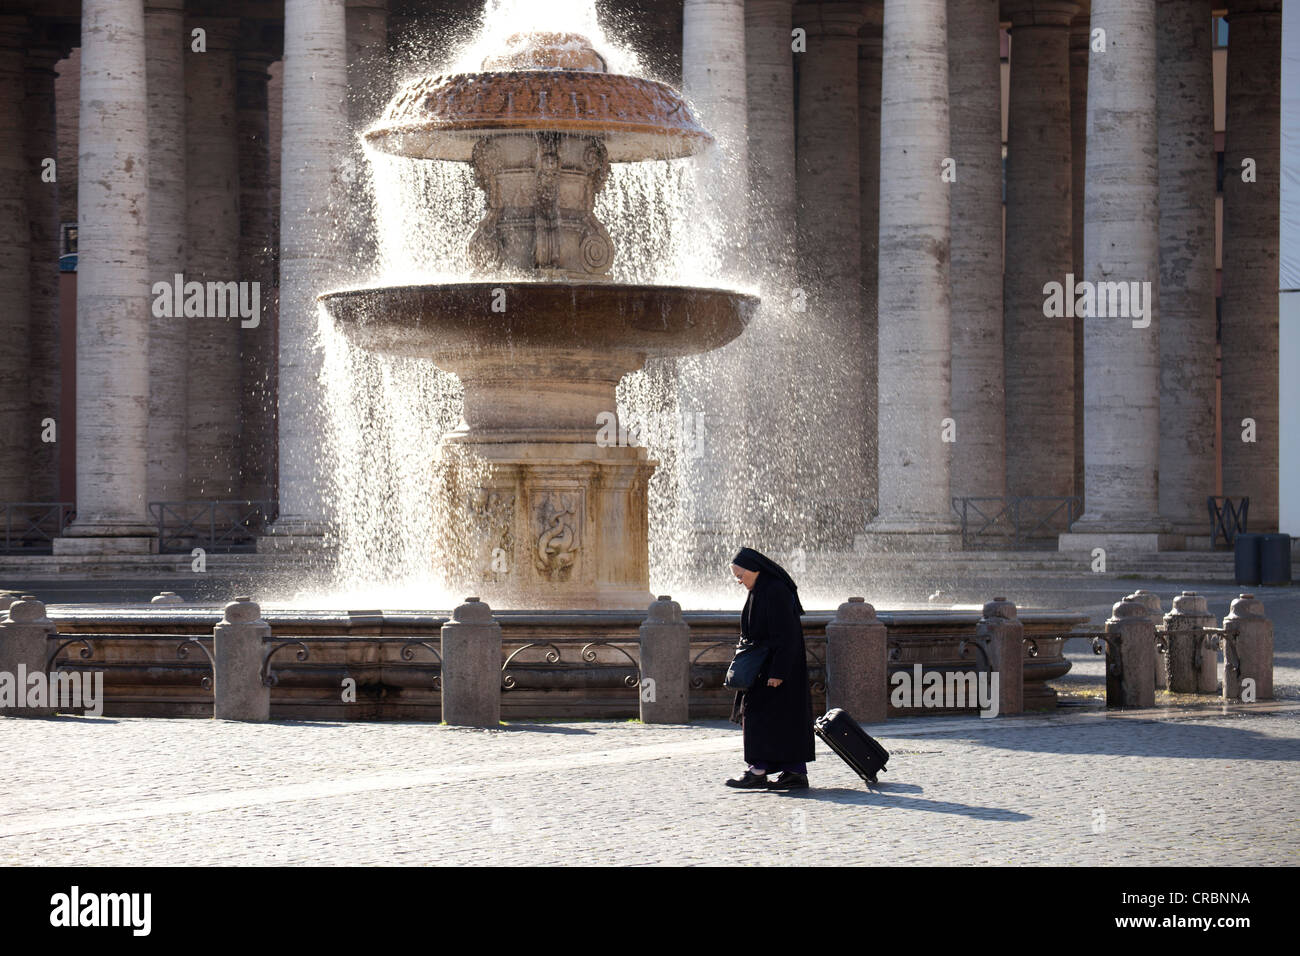 Nun en face d'une fontaine dans la place Saint Pierre à Rome, Italie, Europe Banque D'Images